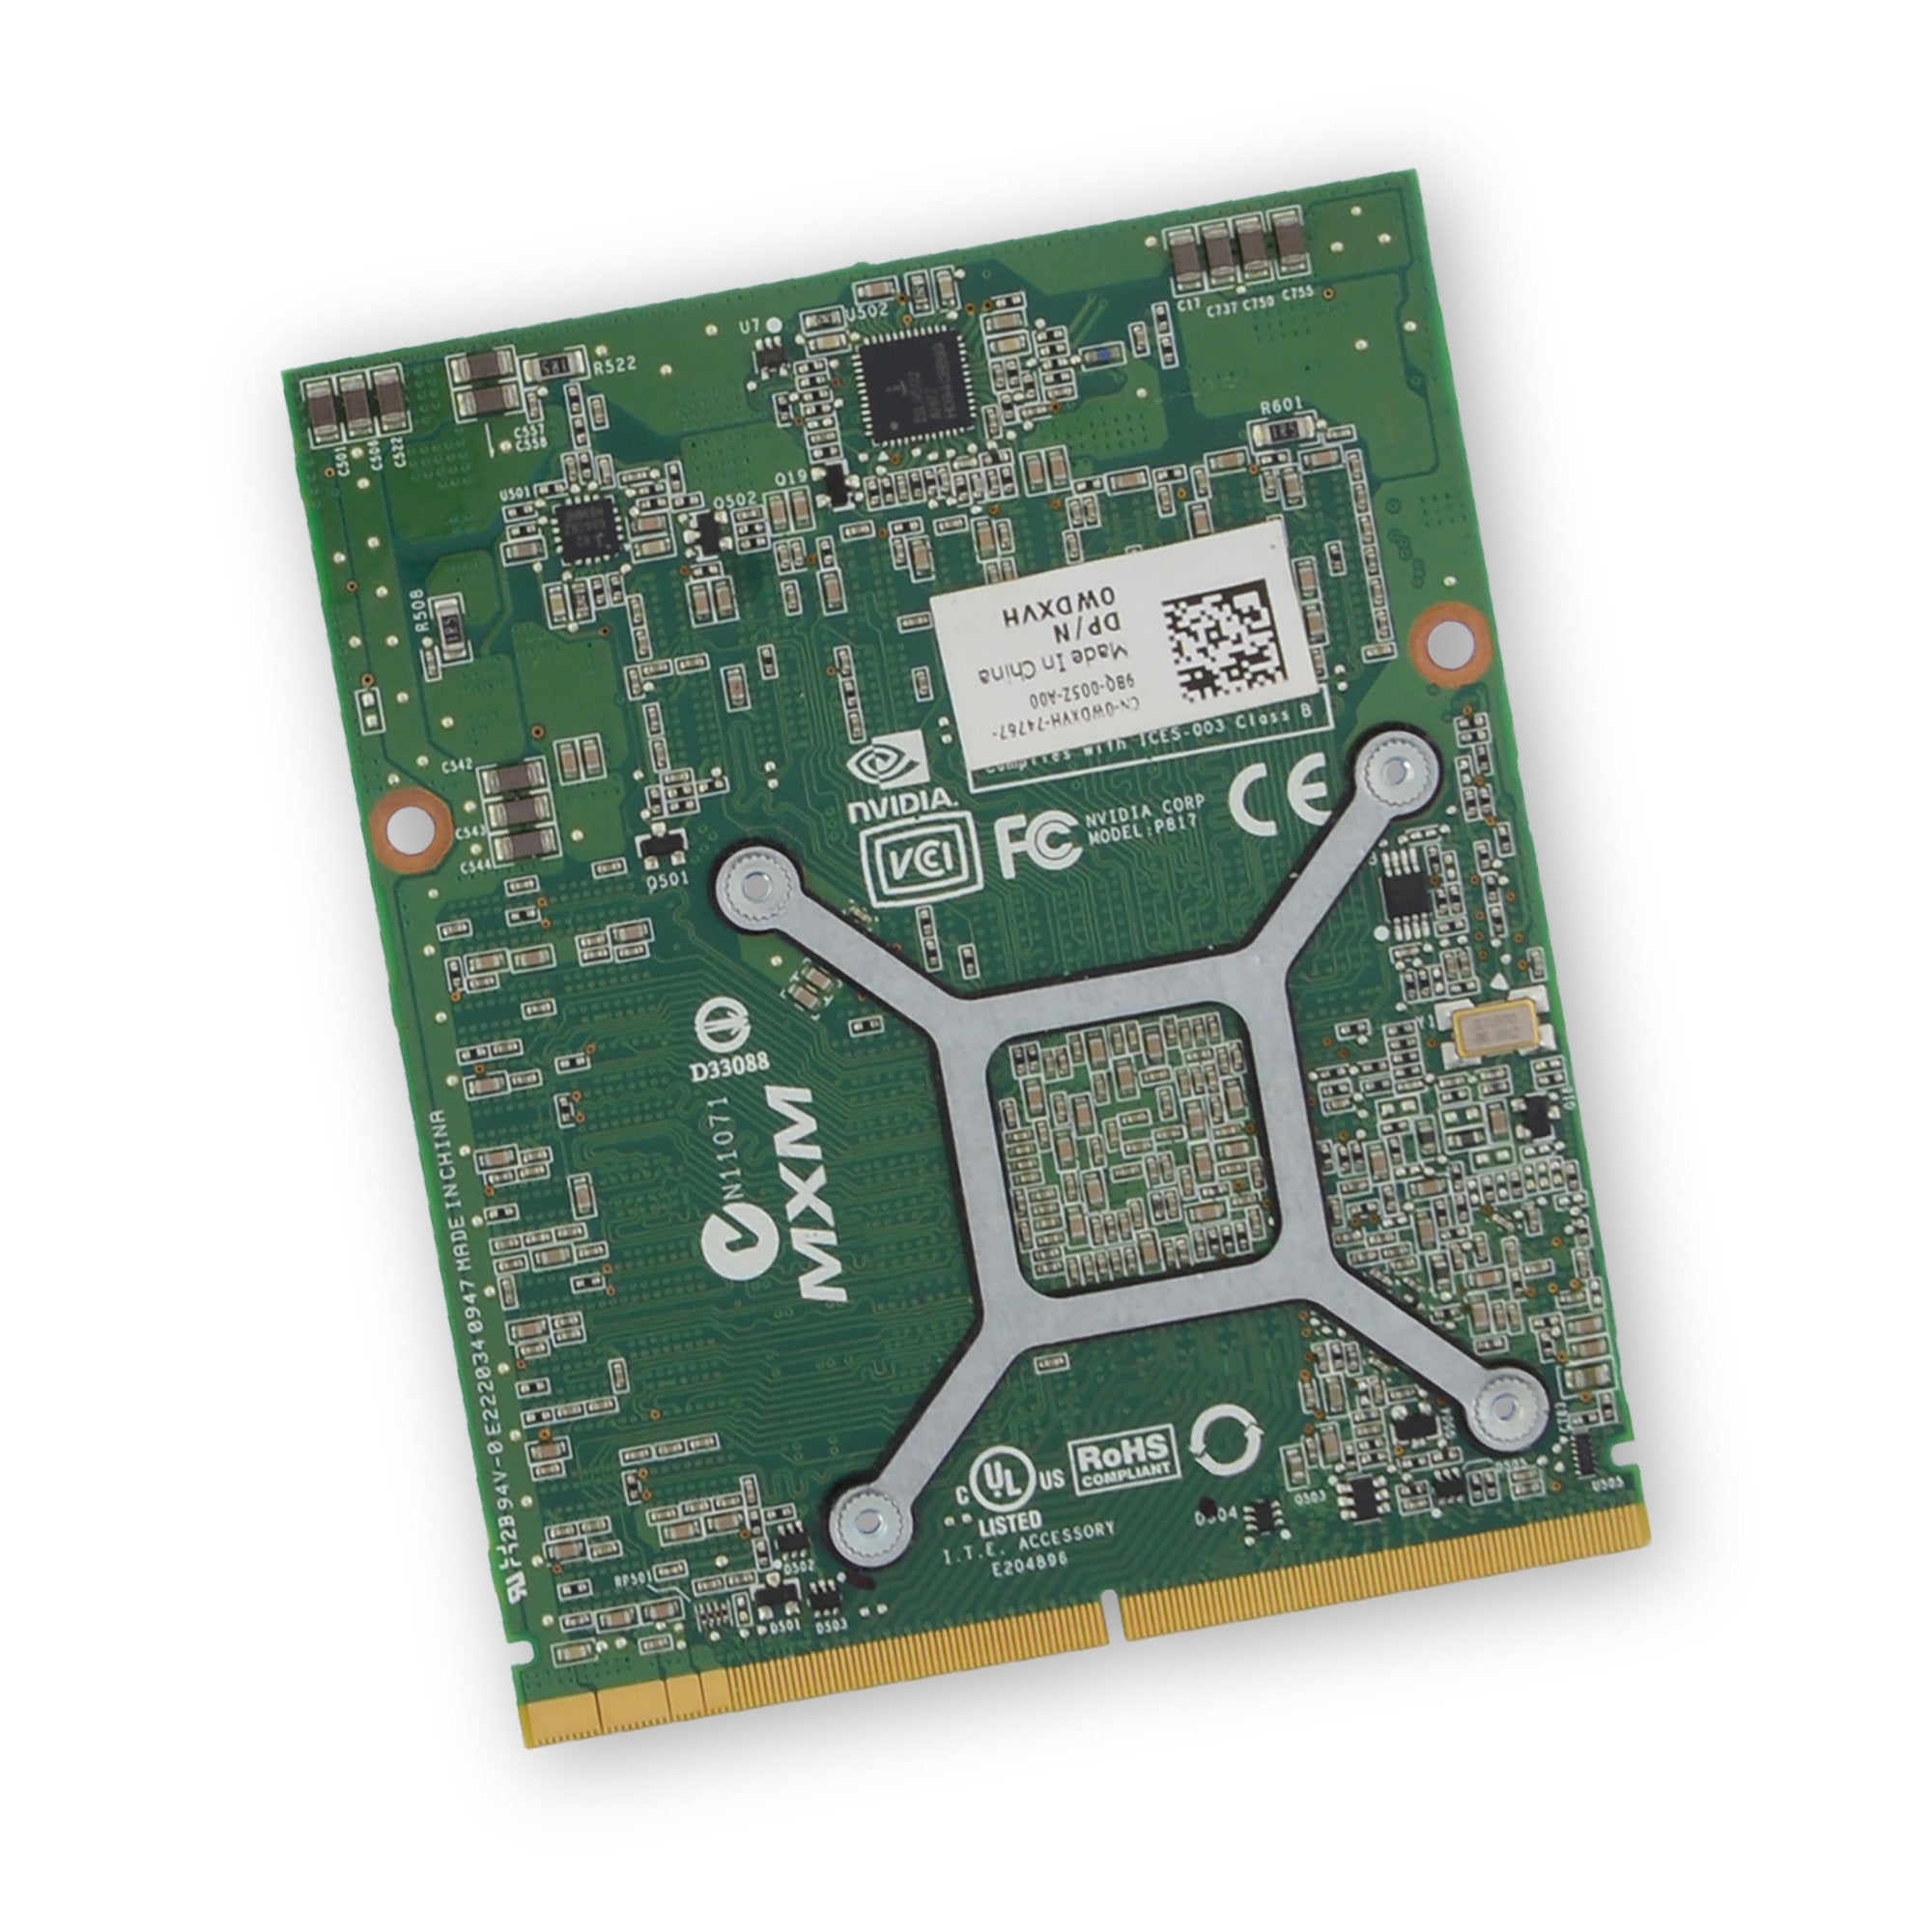 Alienware M15x (P08G) GTX 260M GPU